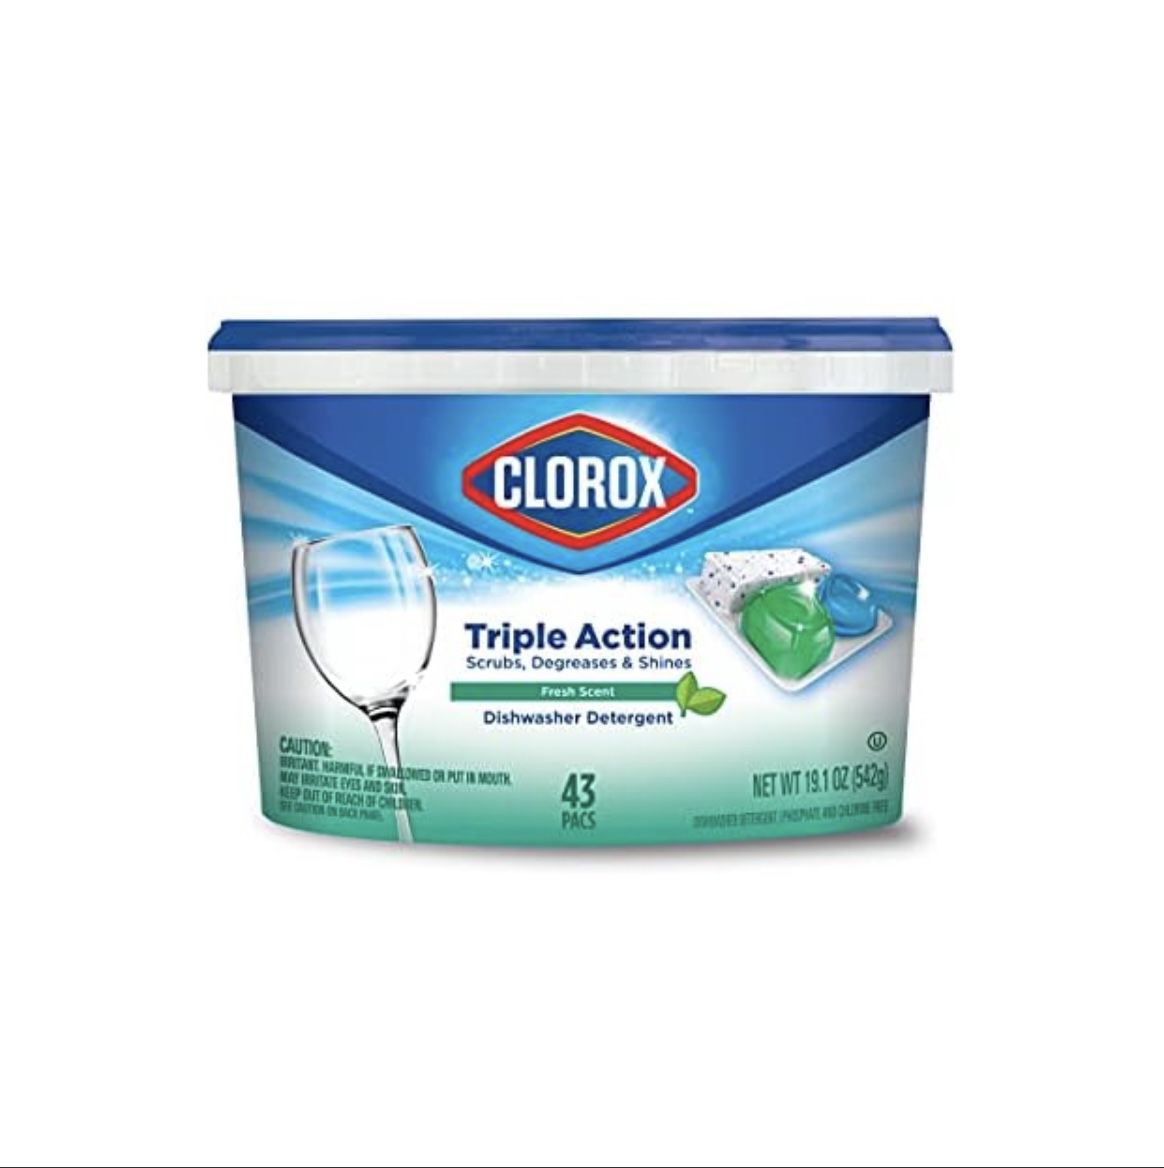 Clorox Triple Action Dishwasher Detergent 43 Ct